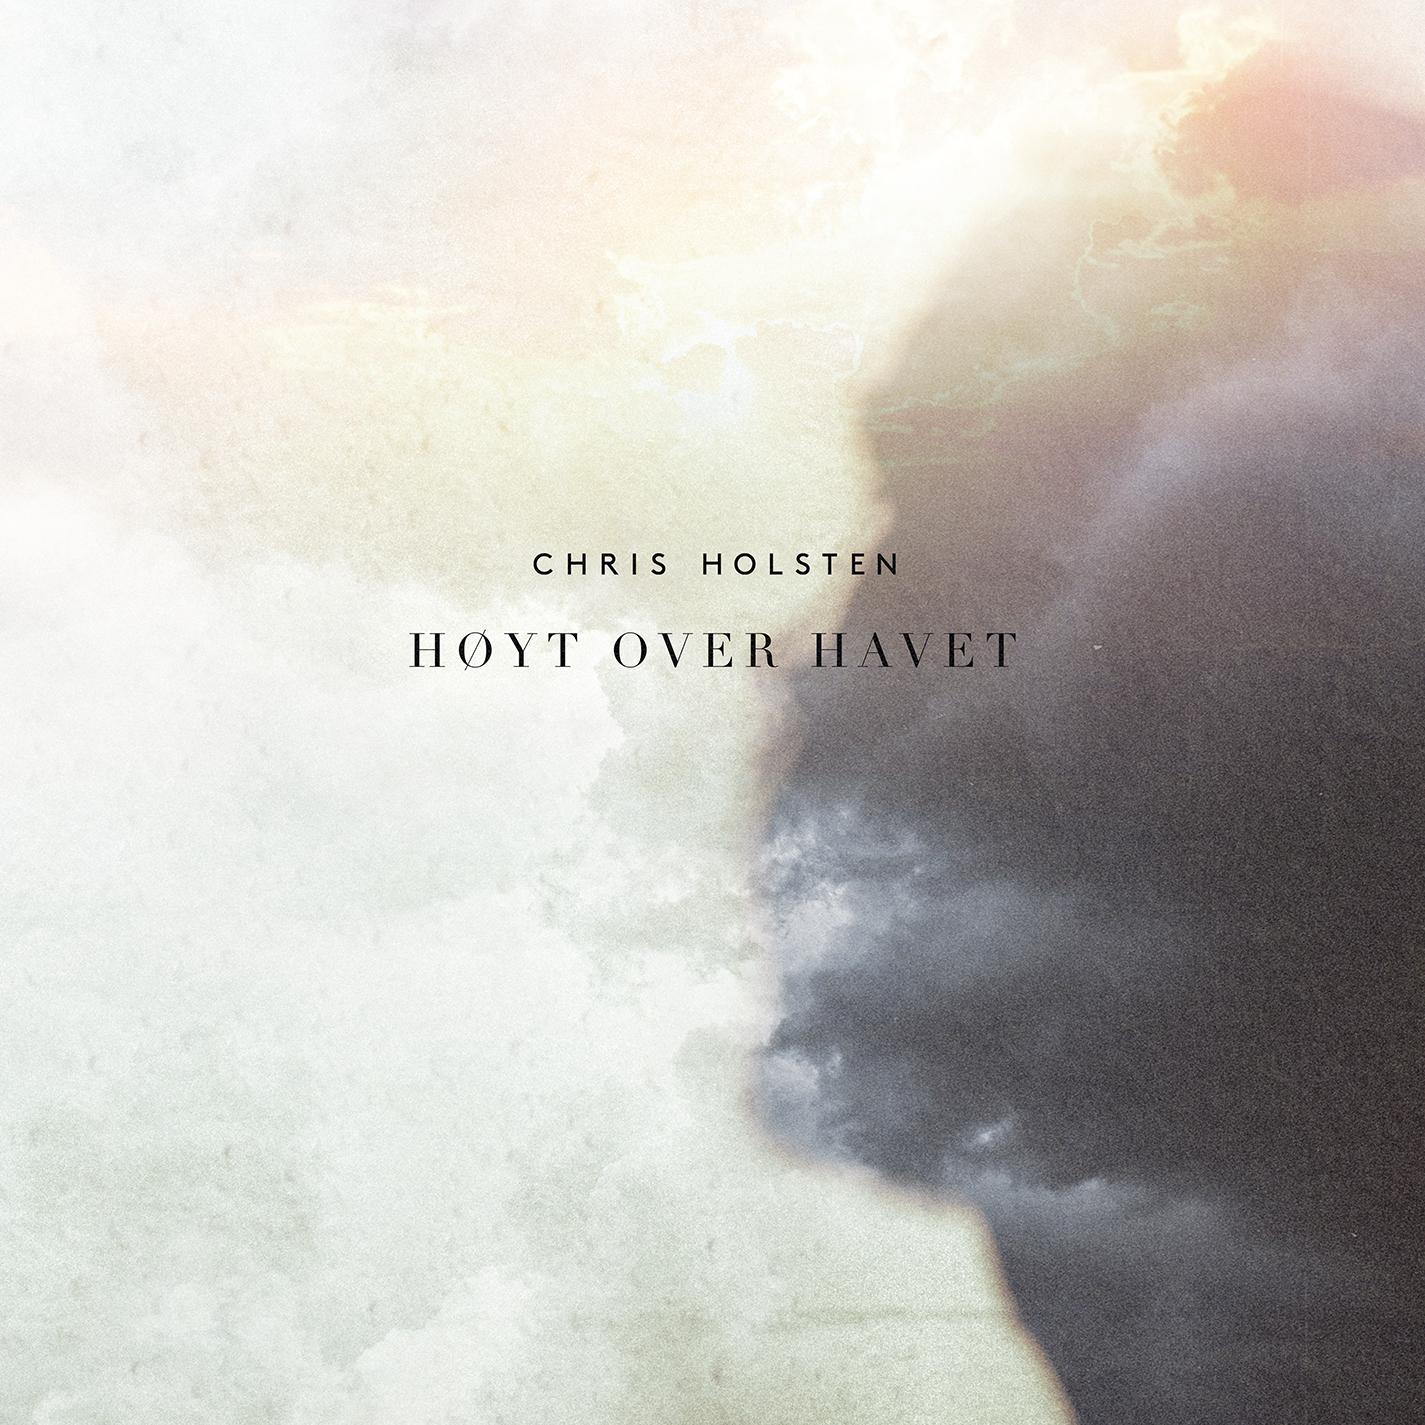 Chris Holsten - Høyt over havet